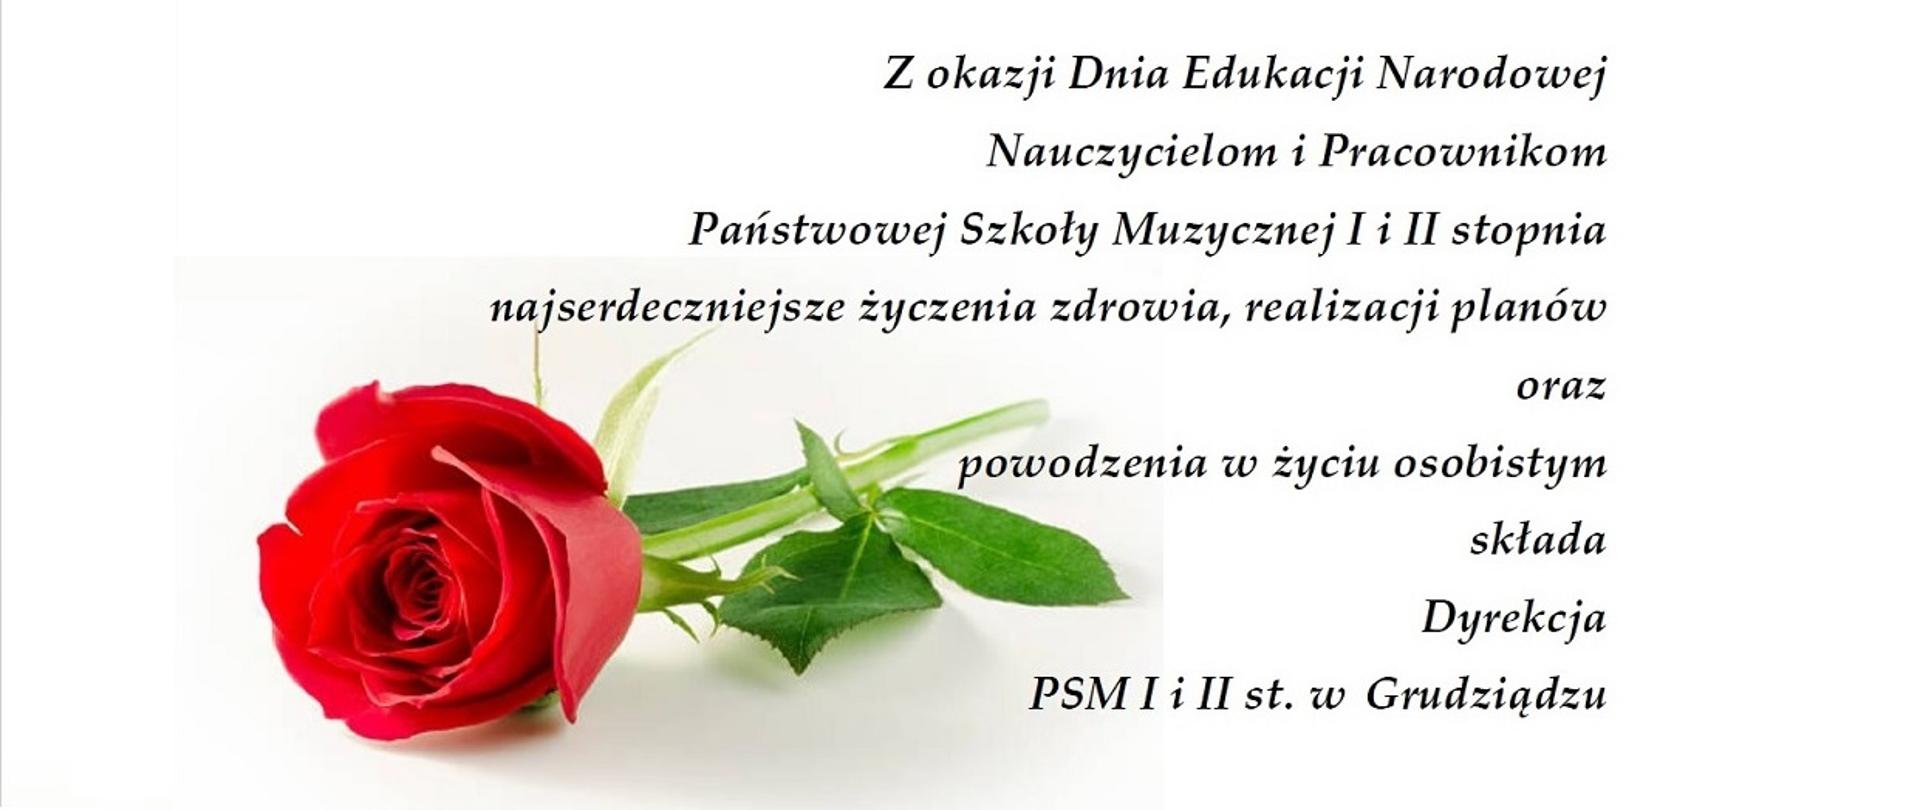 Grafika przedstawiająca czerwoną różę oraz życzenia dla nauczycieli i pracowników szkoły z okazji Dnia Edukacji Narodowej